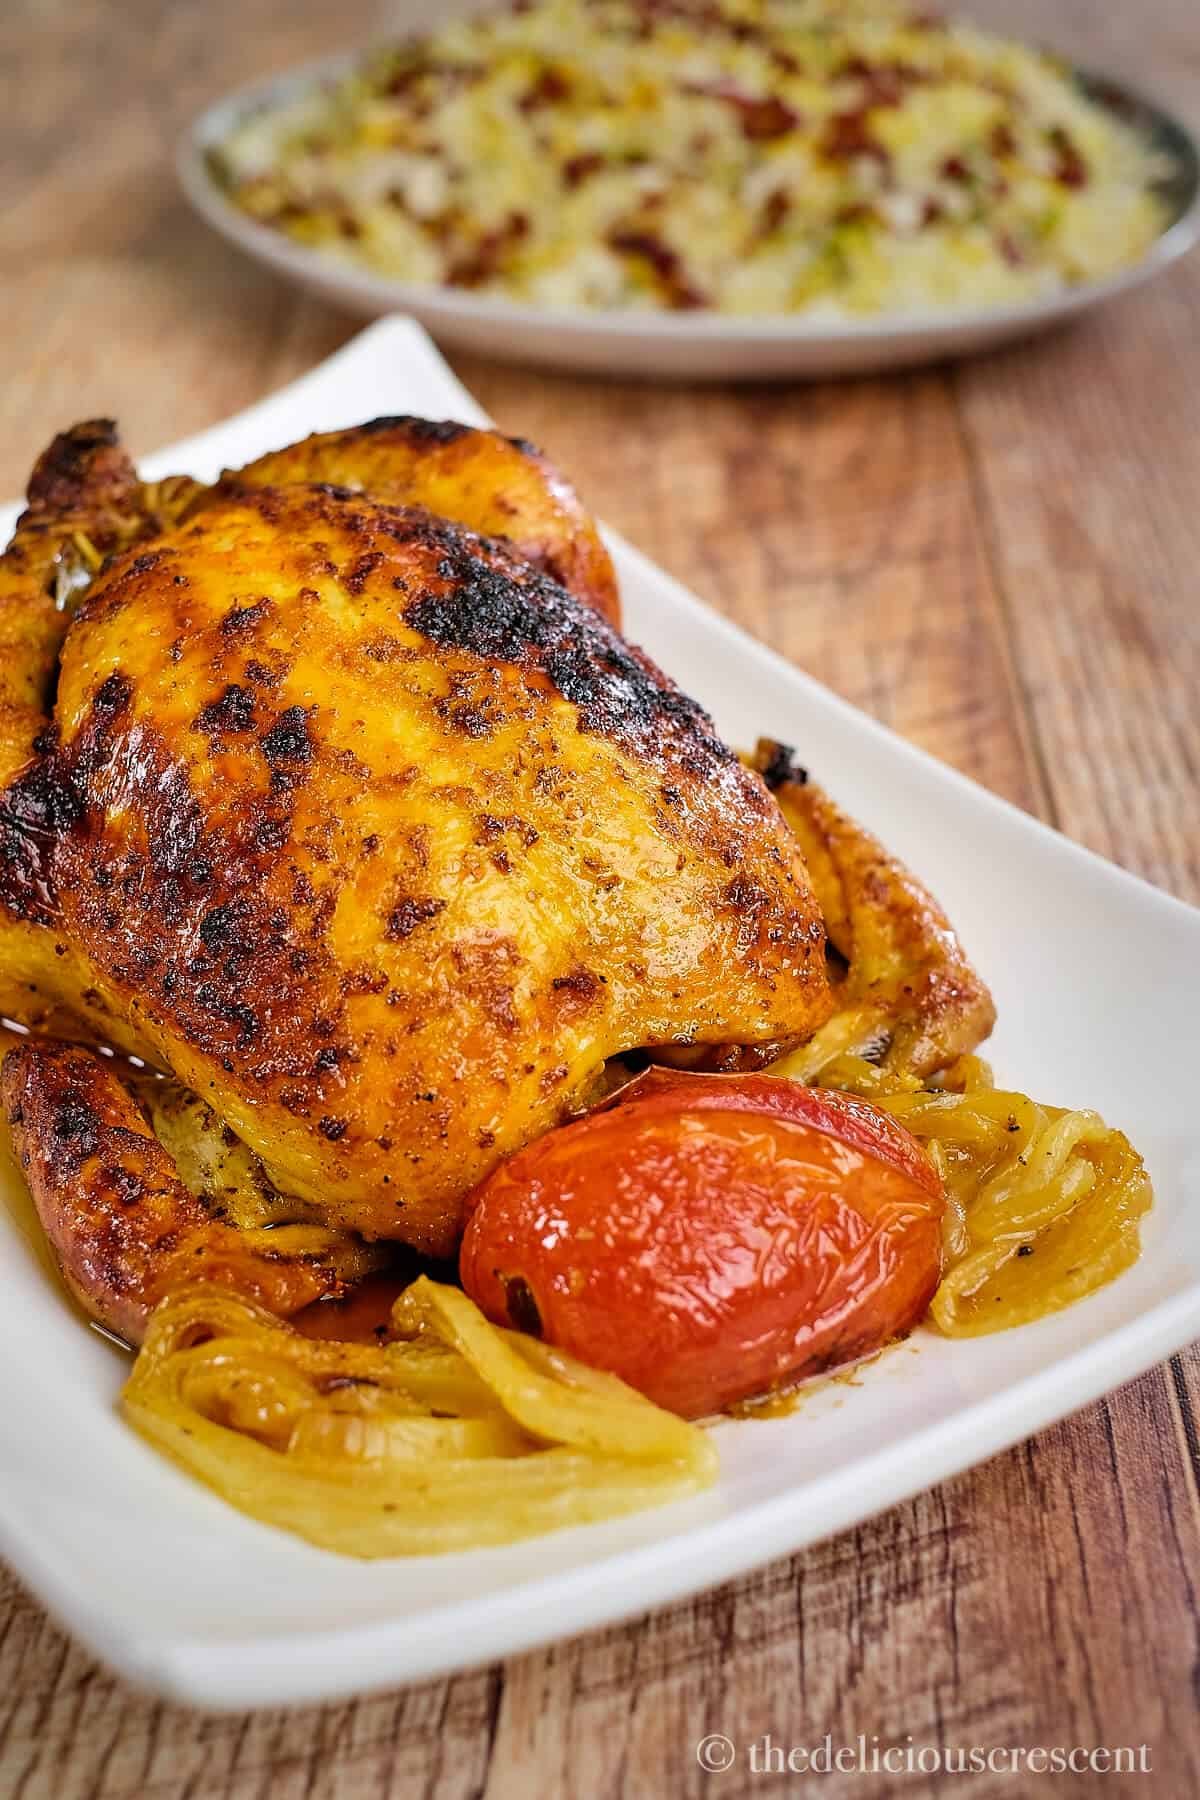 Roast chicken prepared with saffron marinade.